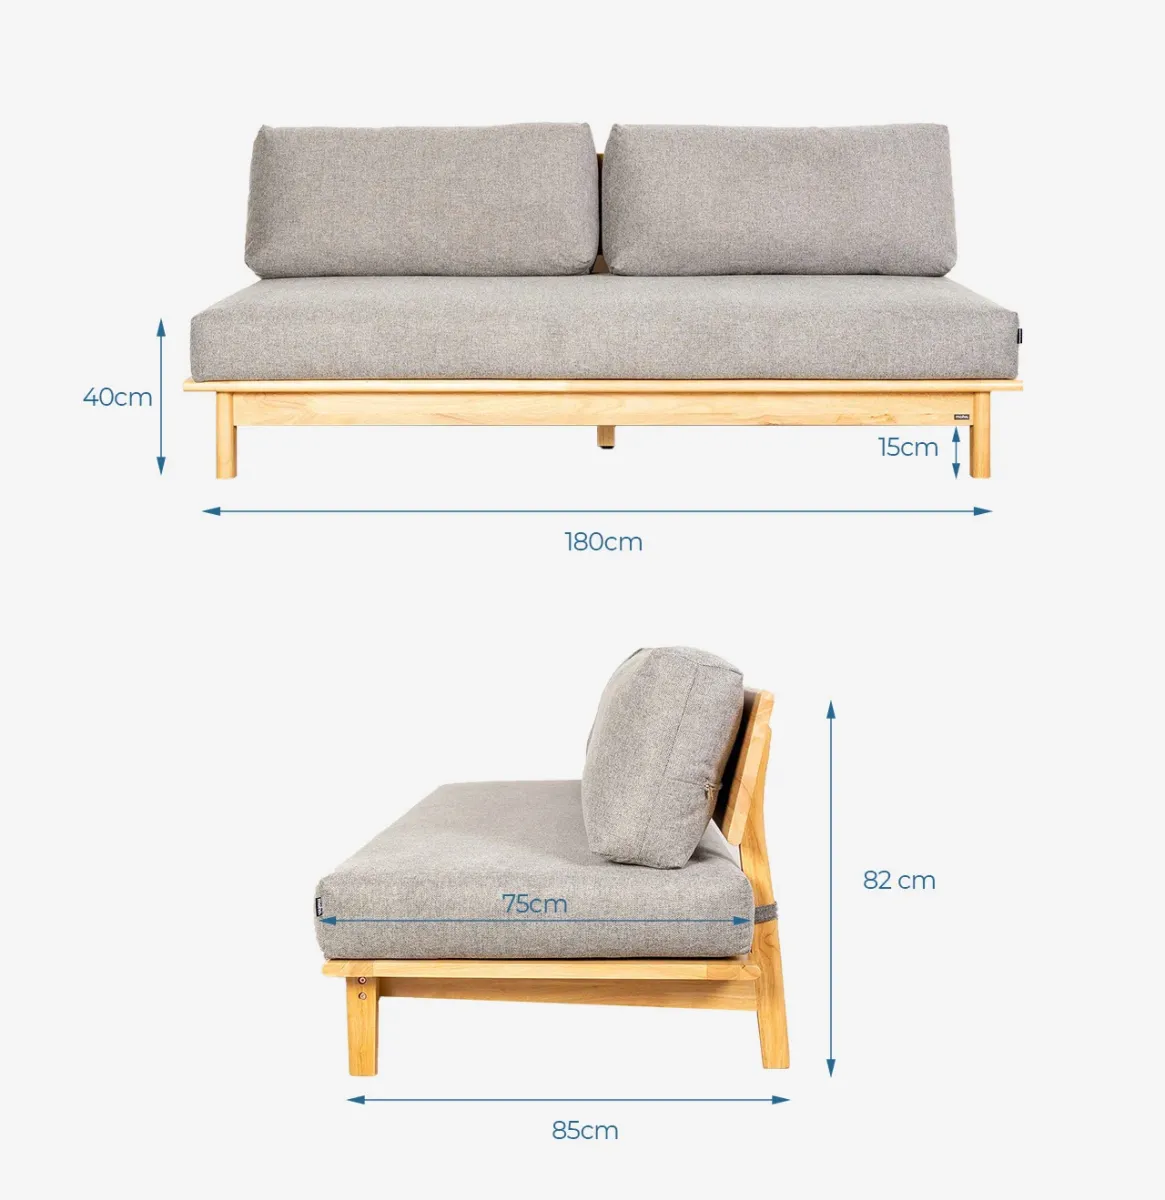 Sofa gỗ cao su - Làm mới không gian nội thất với sofa gỗ cao su thiên nhiên, mang đến sự sang trọng và tiện nghi cho không gian của bạn. Hãy chiêm ngưỡng những hình ảnh về sofa gỗ cao su, từ đường nét tinh tế đến chất liệu cao cấp, bạn sẽ không thể bỏ qua!